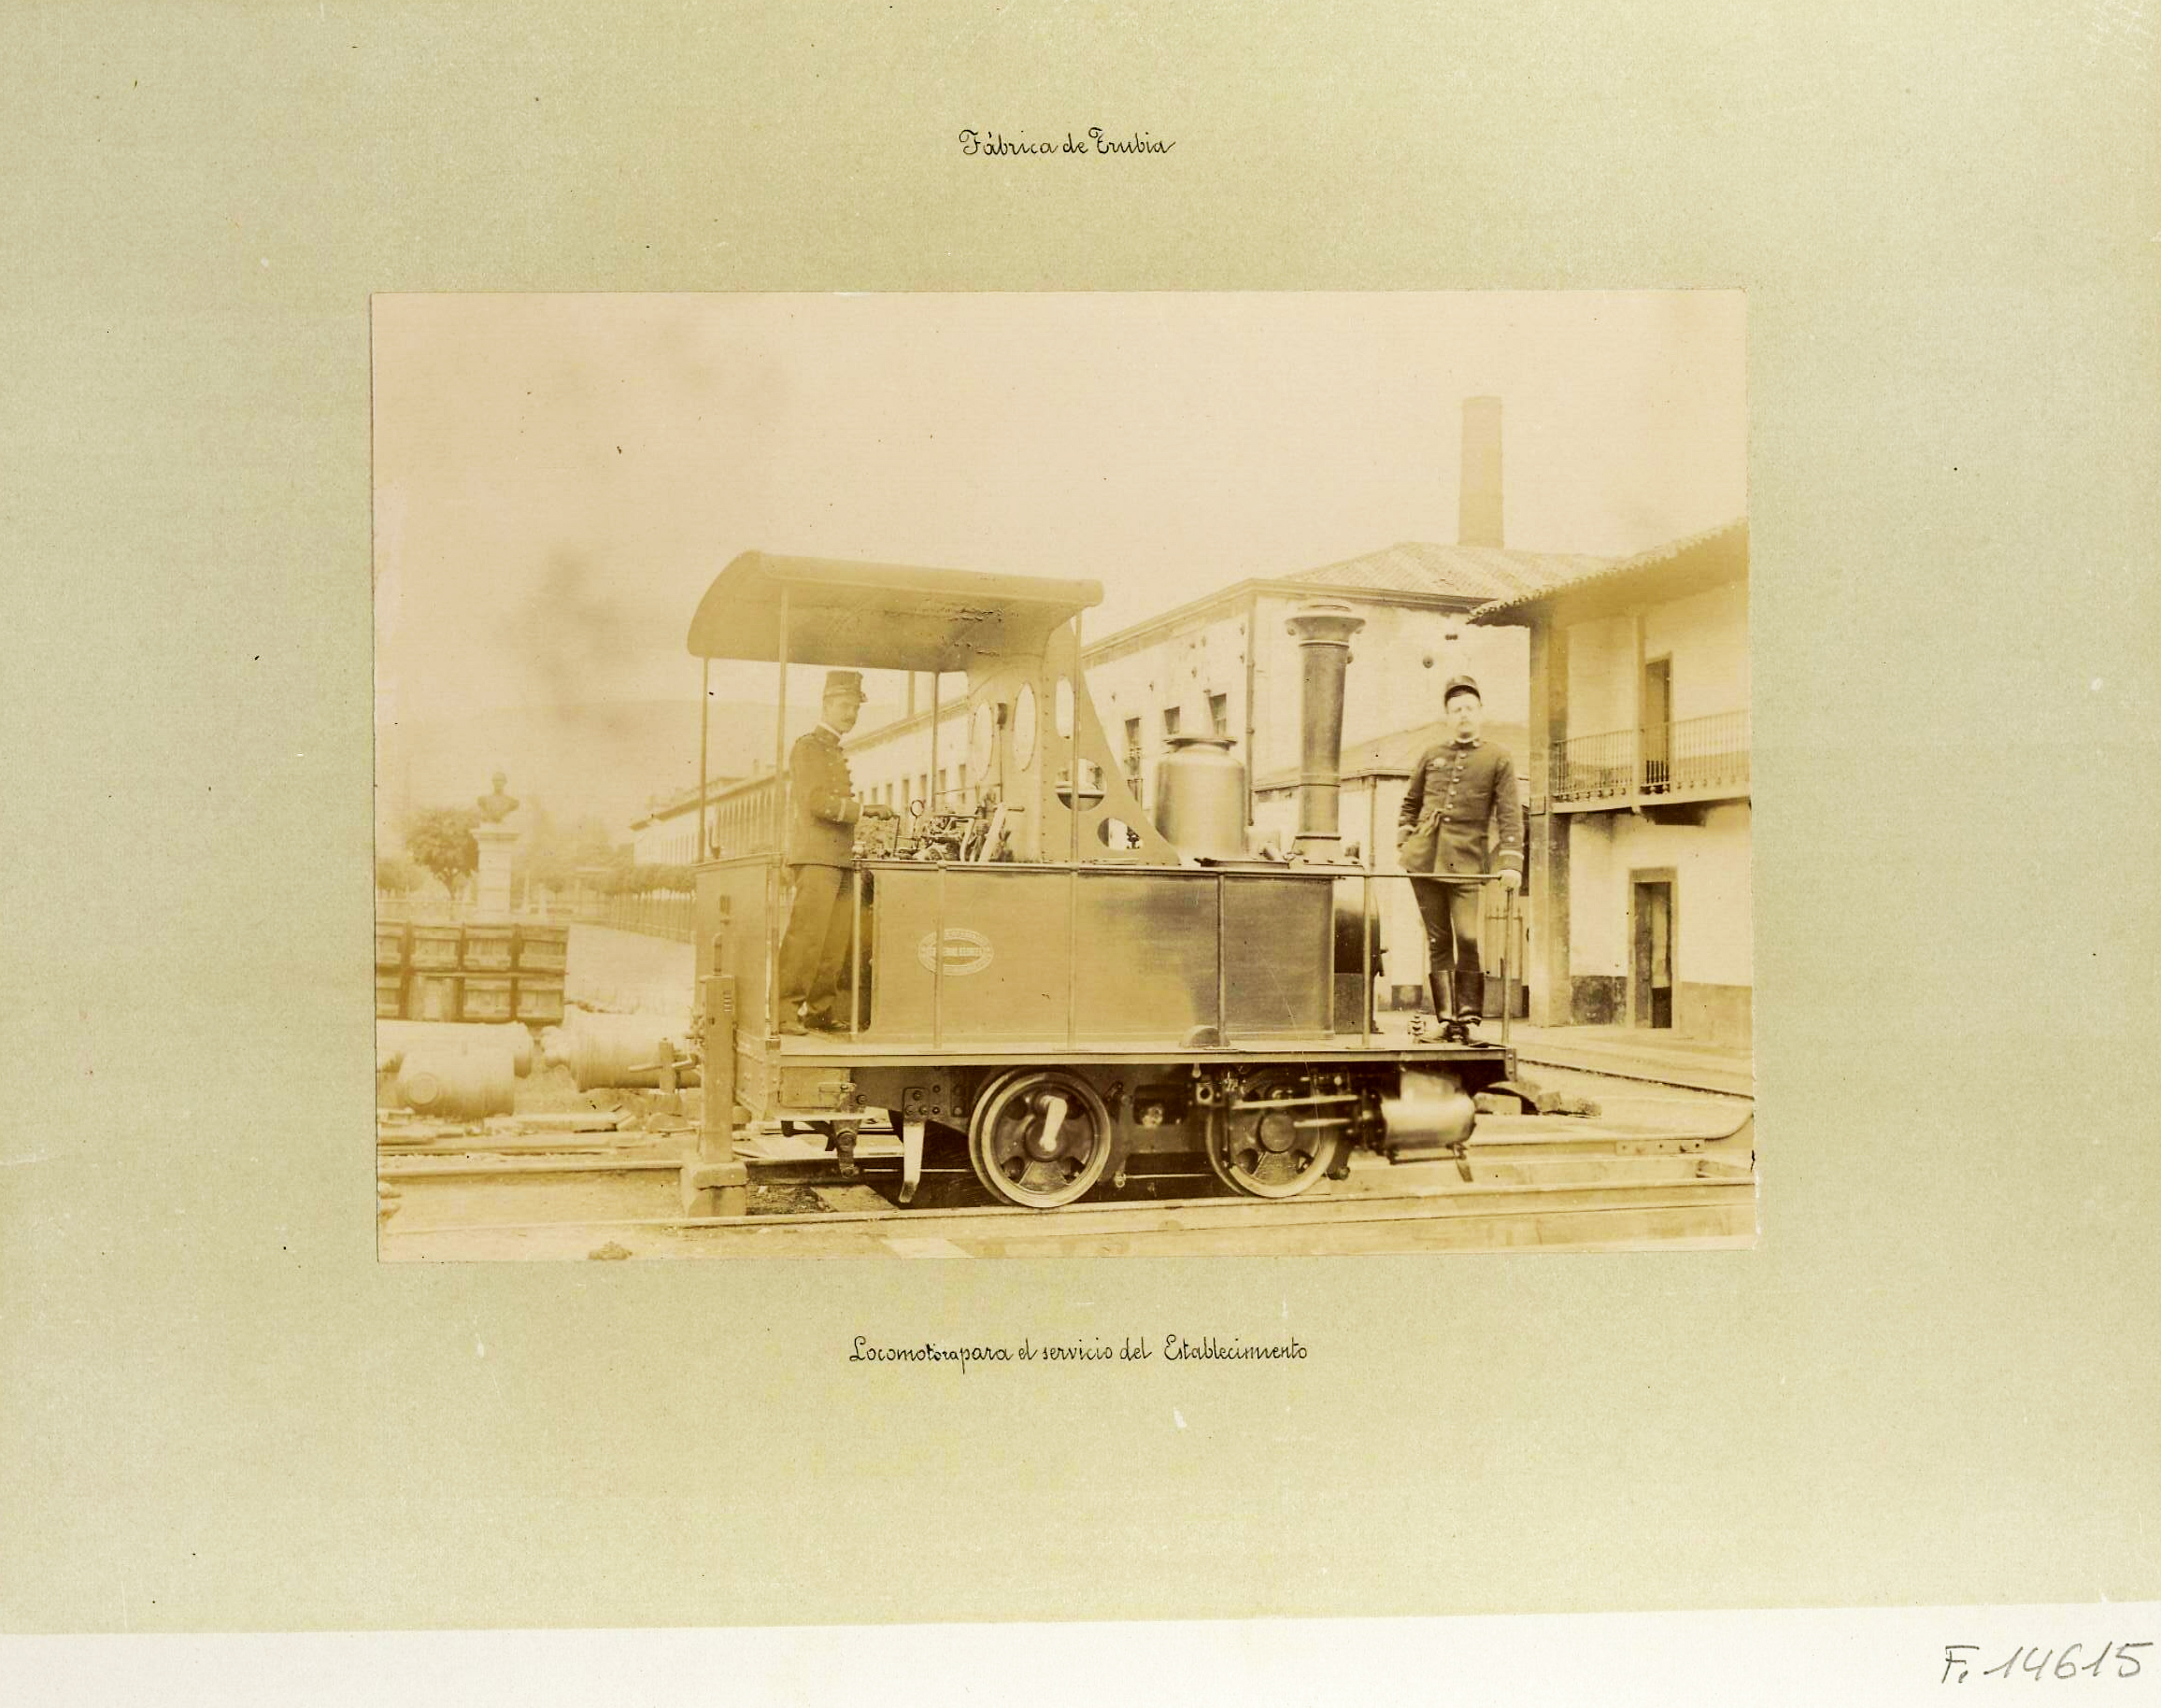 Locomotora para el servicio del establecimiento, Trubia, viaje de instrucción a las fábricas de Asturias, 1895